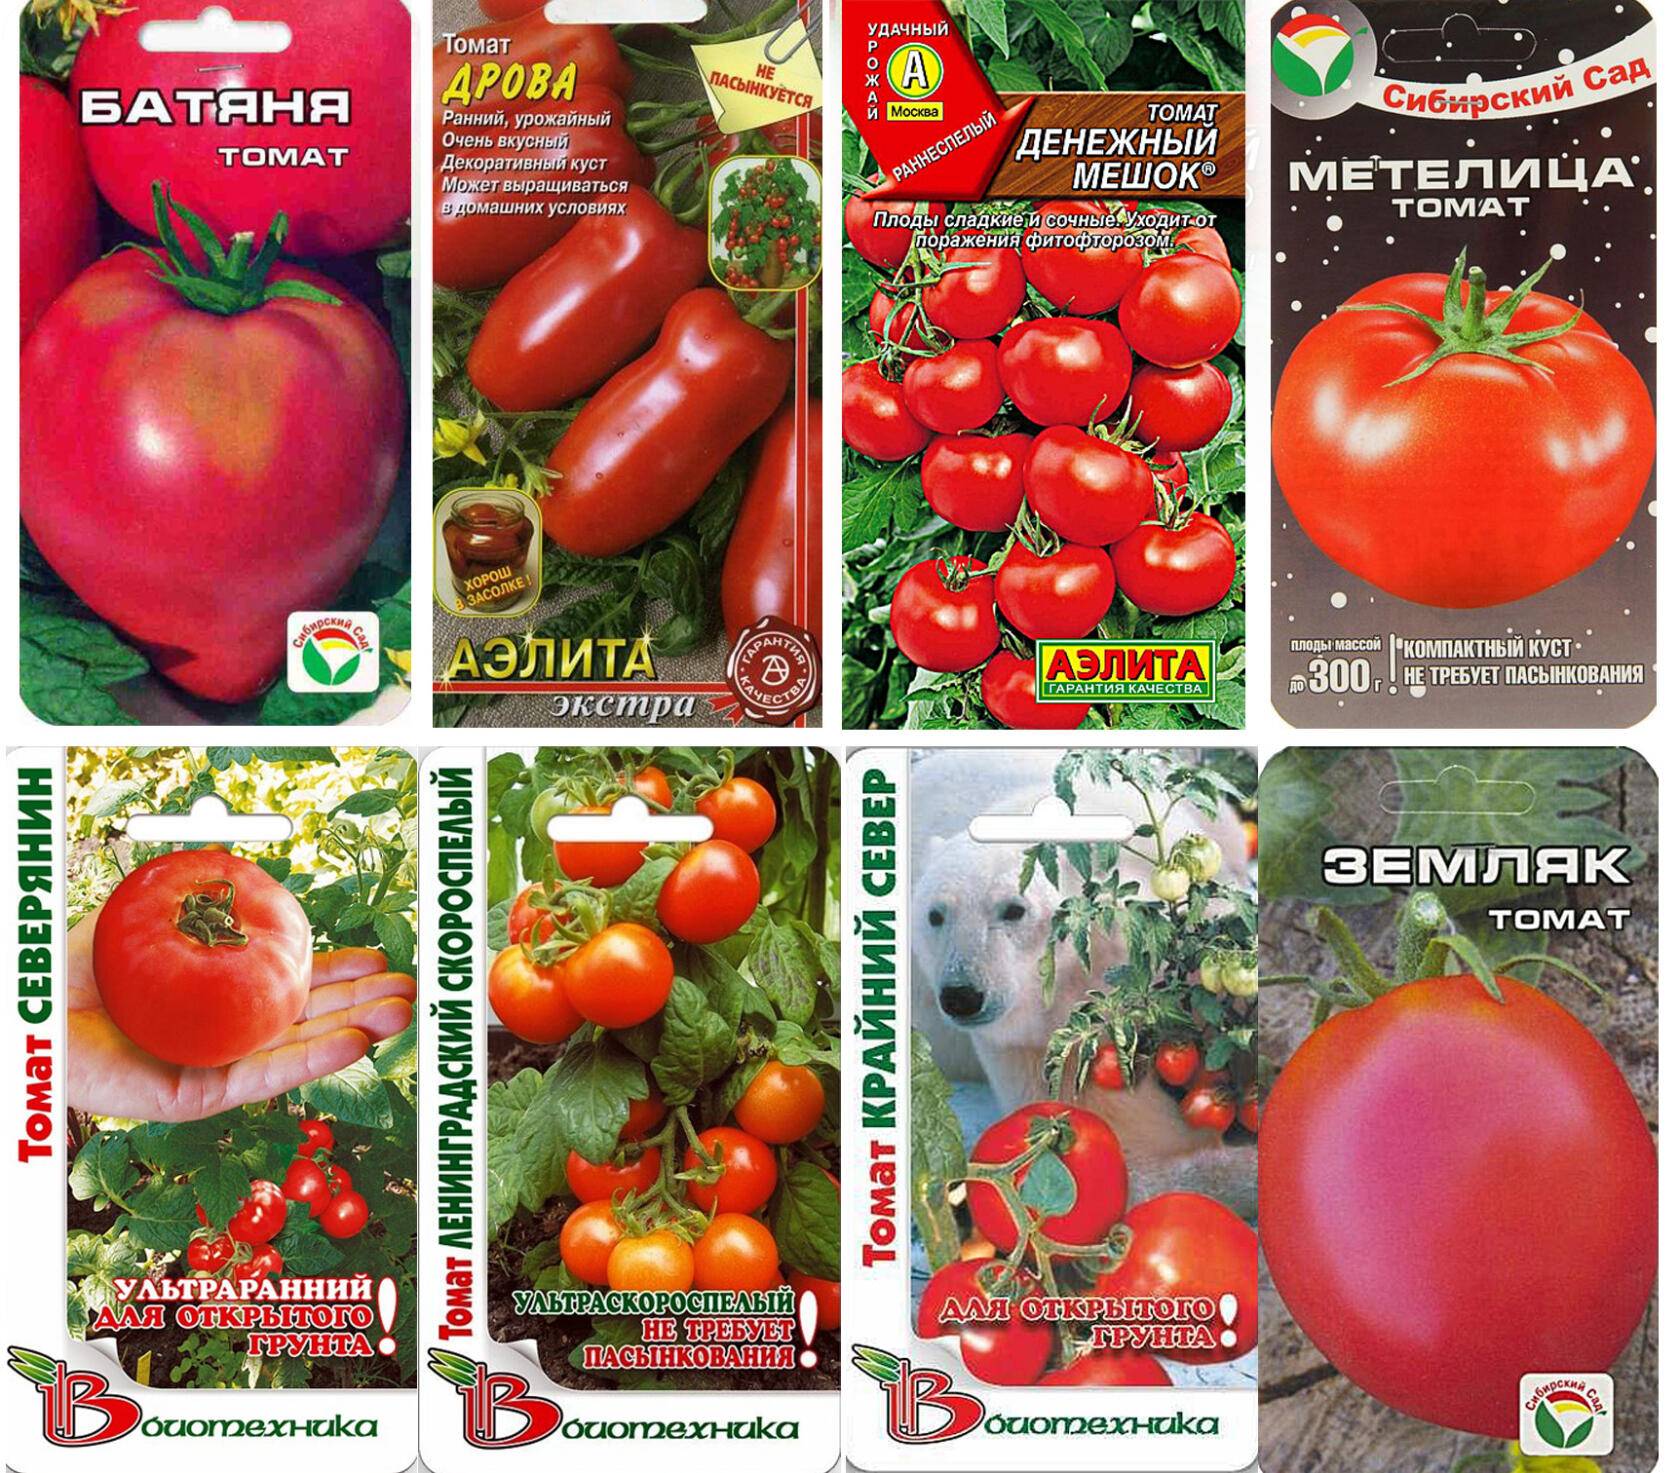 Описание и характеристики лучших сортов томатов для Подмосковья